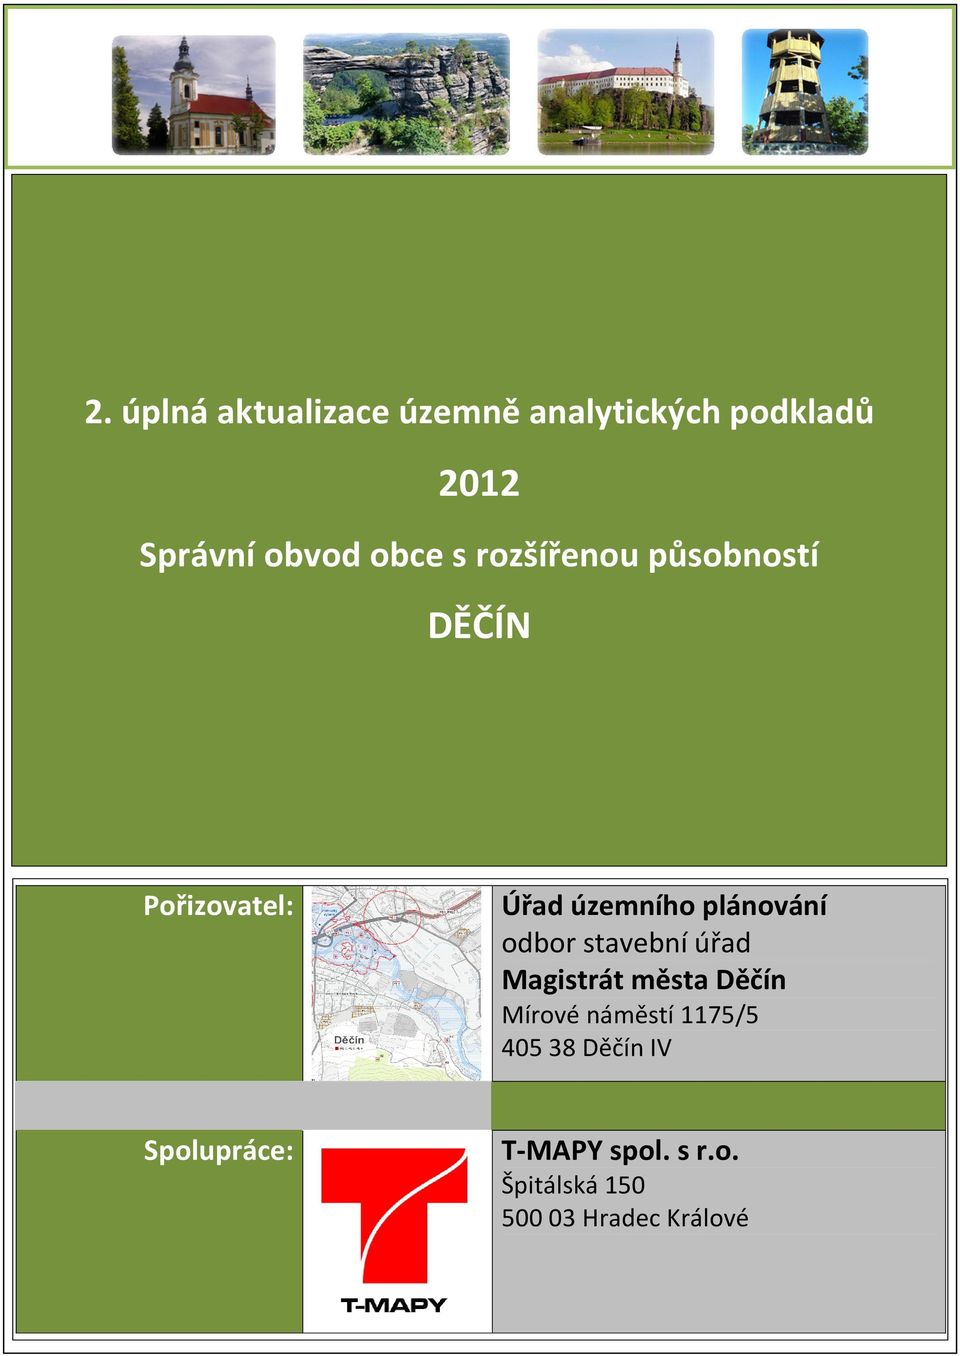 stavební úřad agistrát města Děčín írové náměstí 1175/5 405 38 Děčín IV